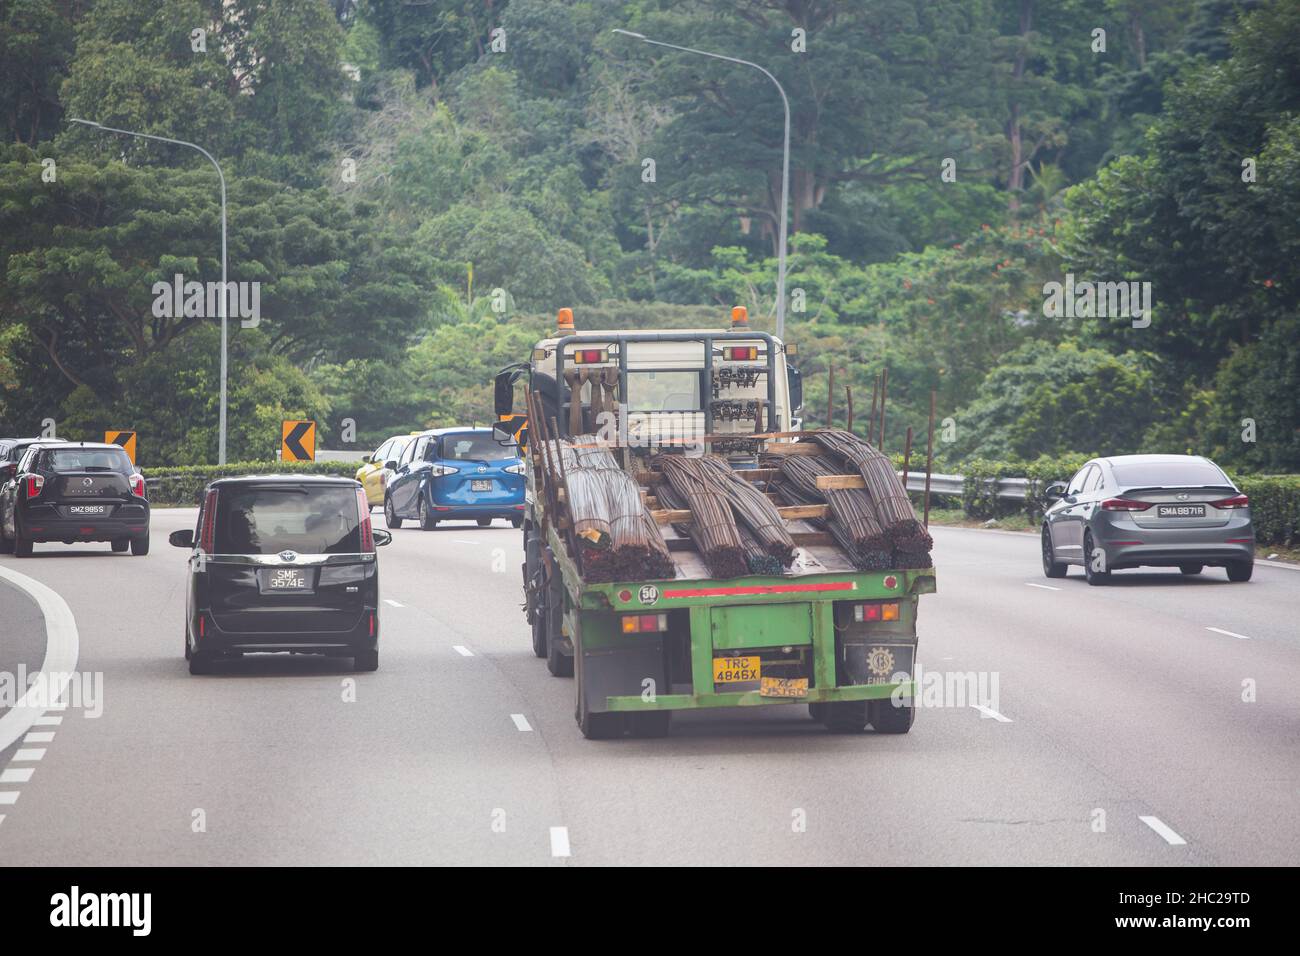 Un camion-remorque qui se déplace sur la route transporte de longs aciers sur la route jusqu'à la prochaine destination de déchargement. Singapour. Banque D'Images